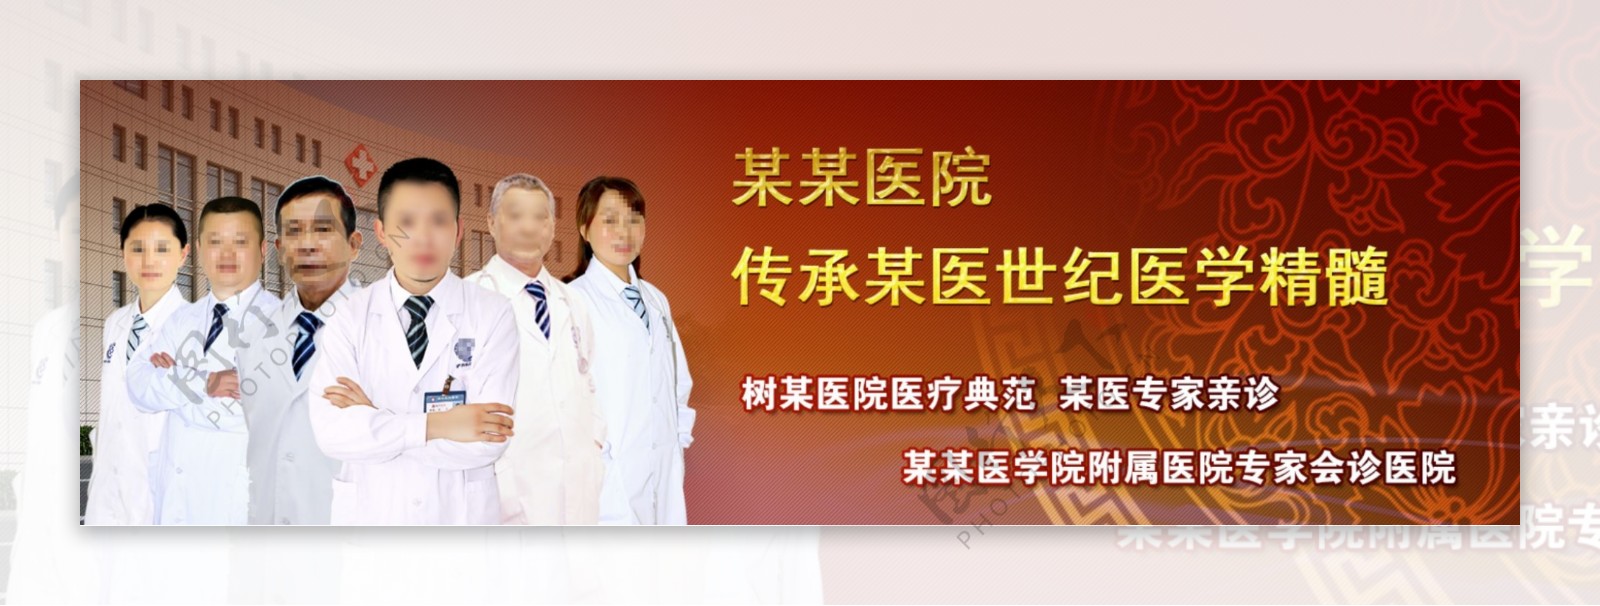 医院网站海报广告Banner